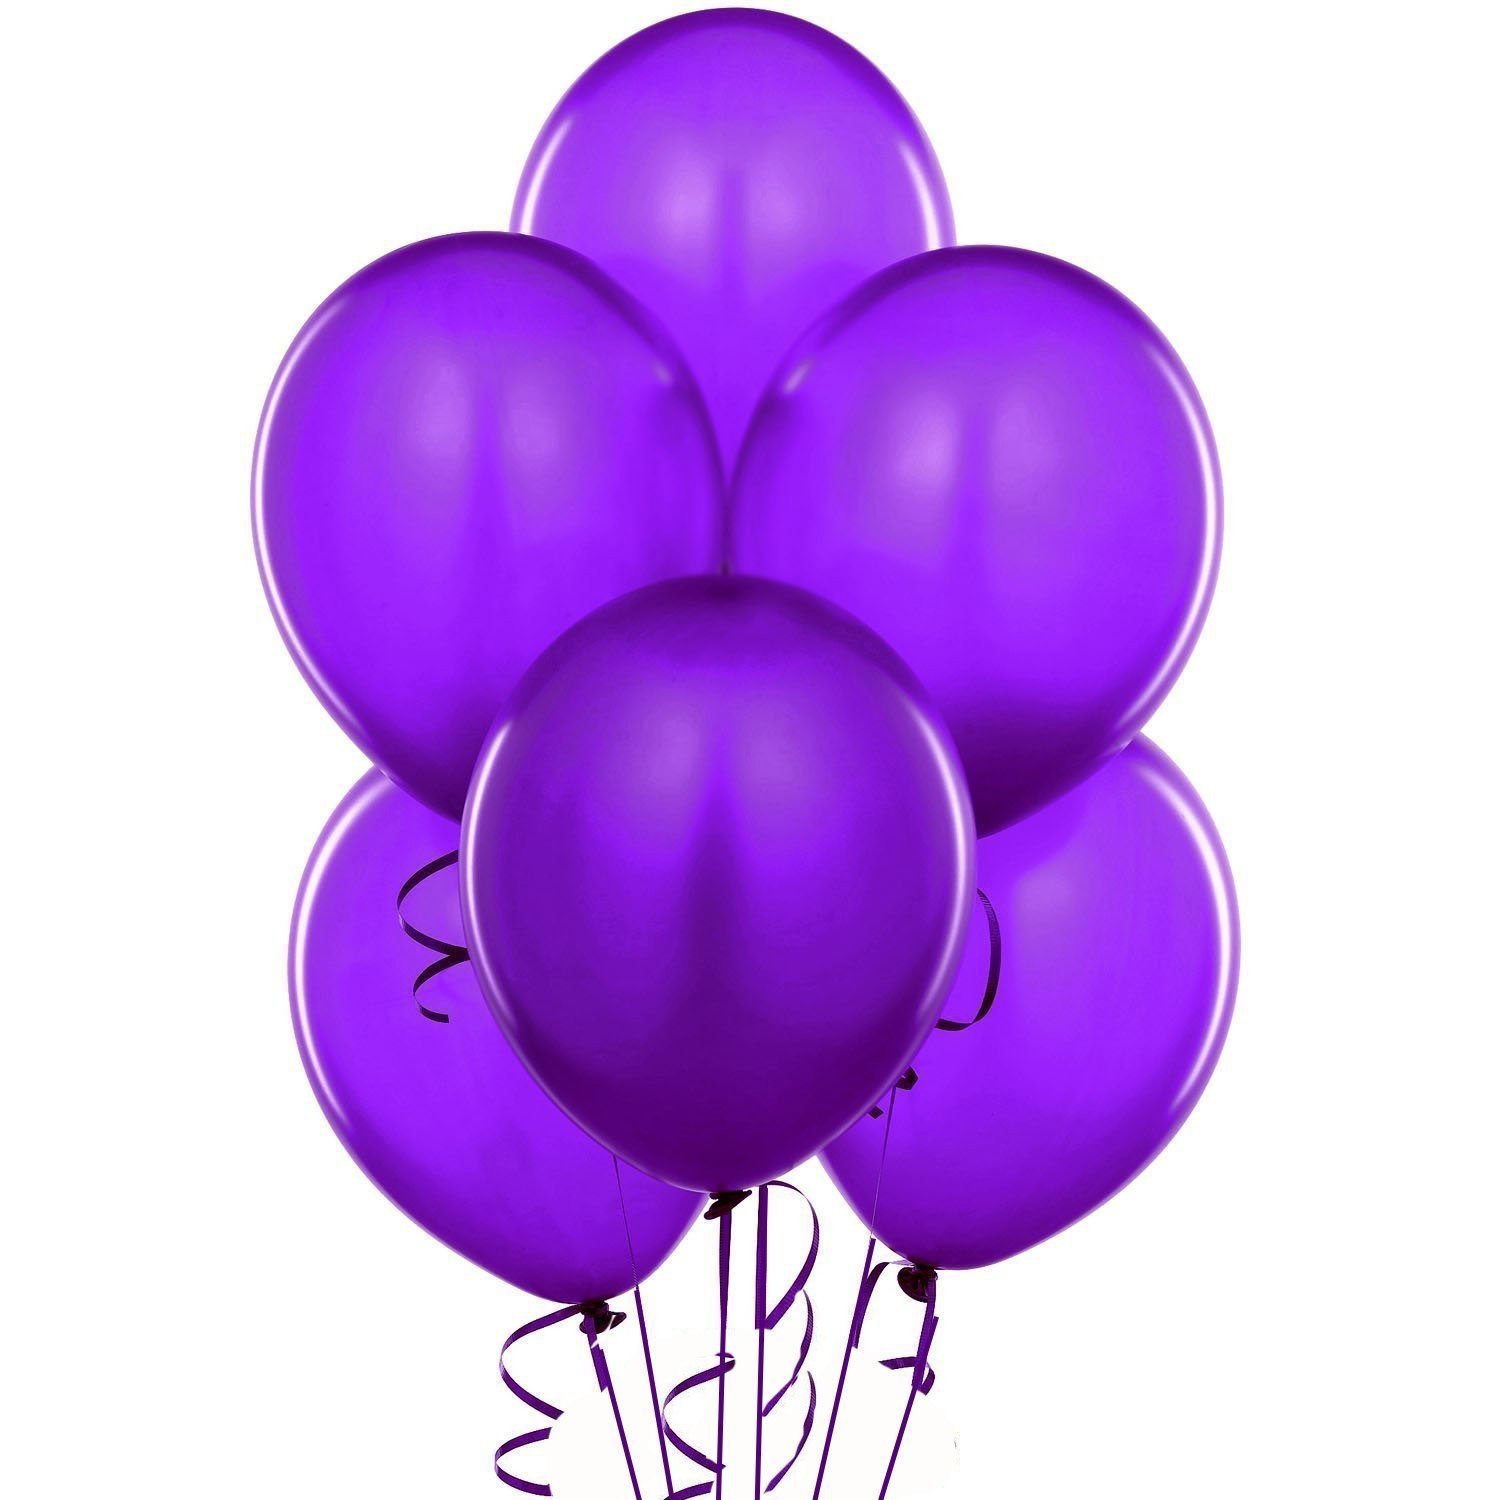 Вики шаров. Воздушный шарик. Фиолетовые шары. Фиолетовый шарик. Воздушные шарики фиолетовые.